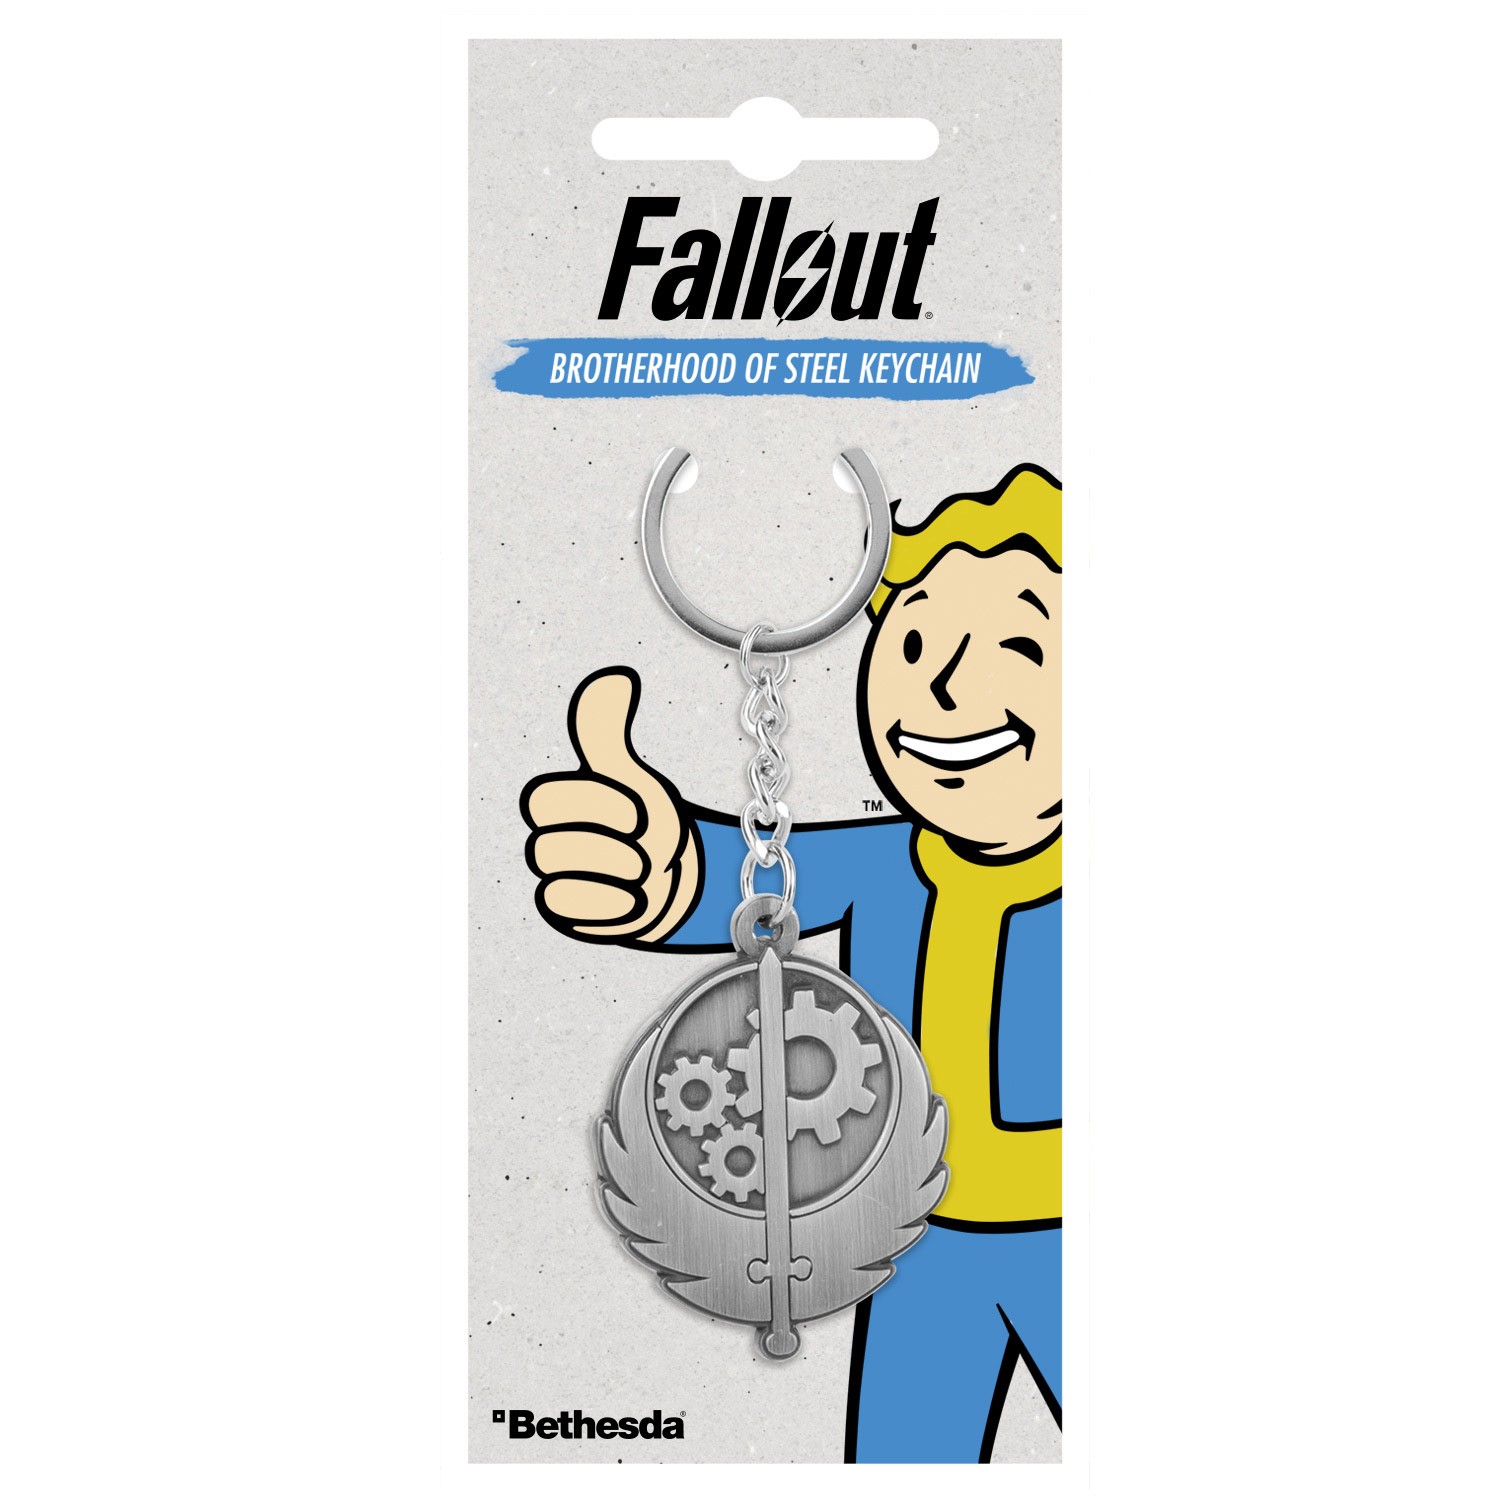 Fallout "Brotherhood of Steel" raktų pakabukas